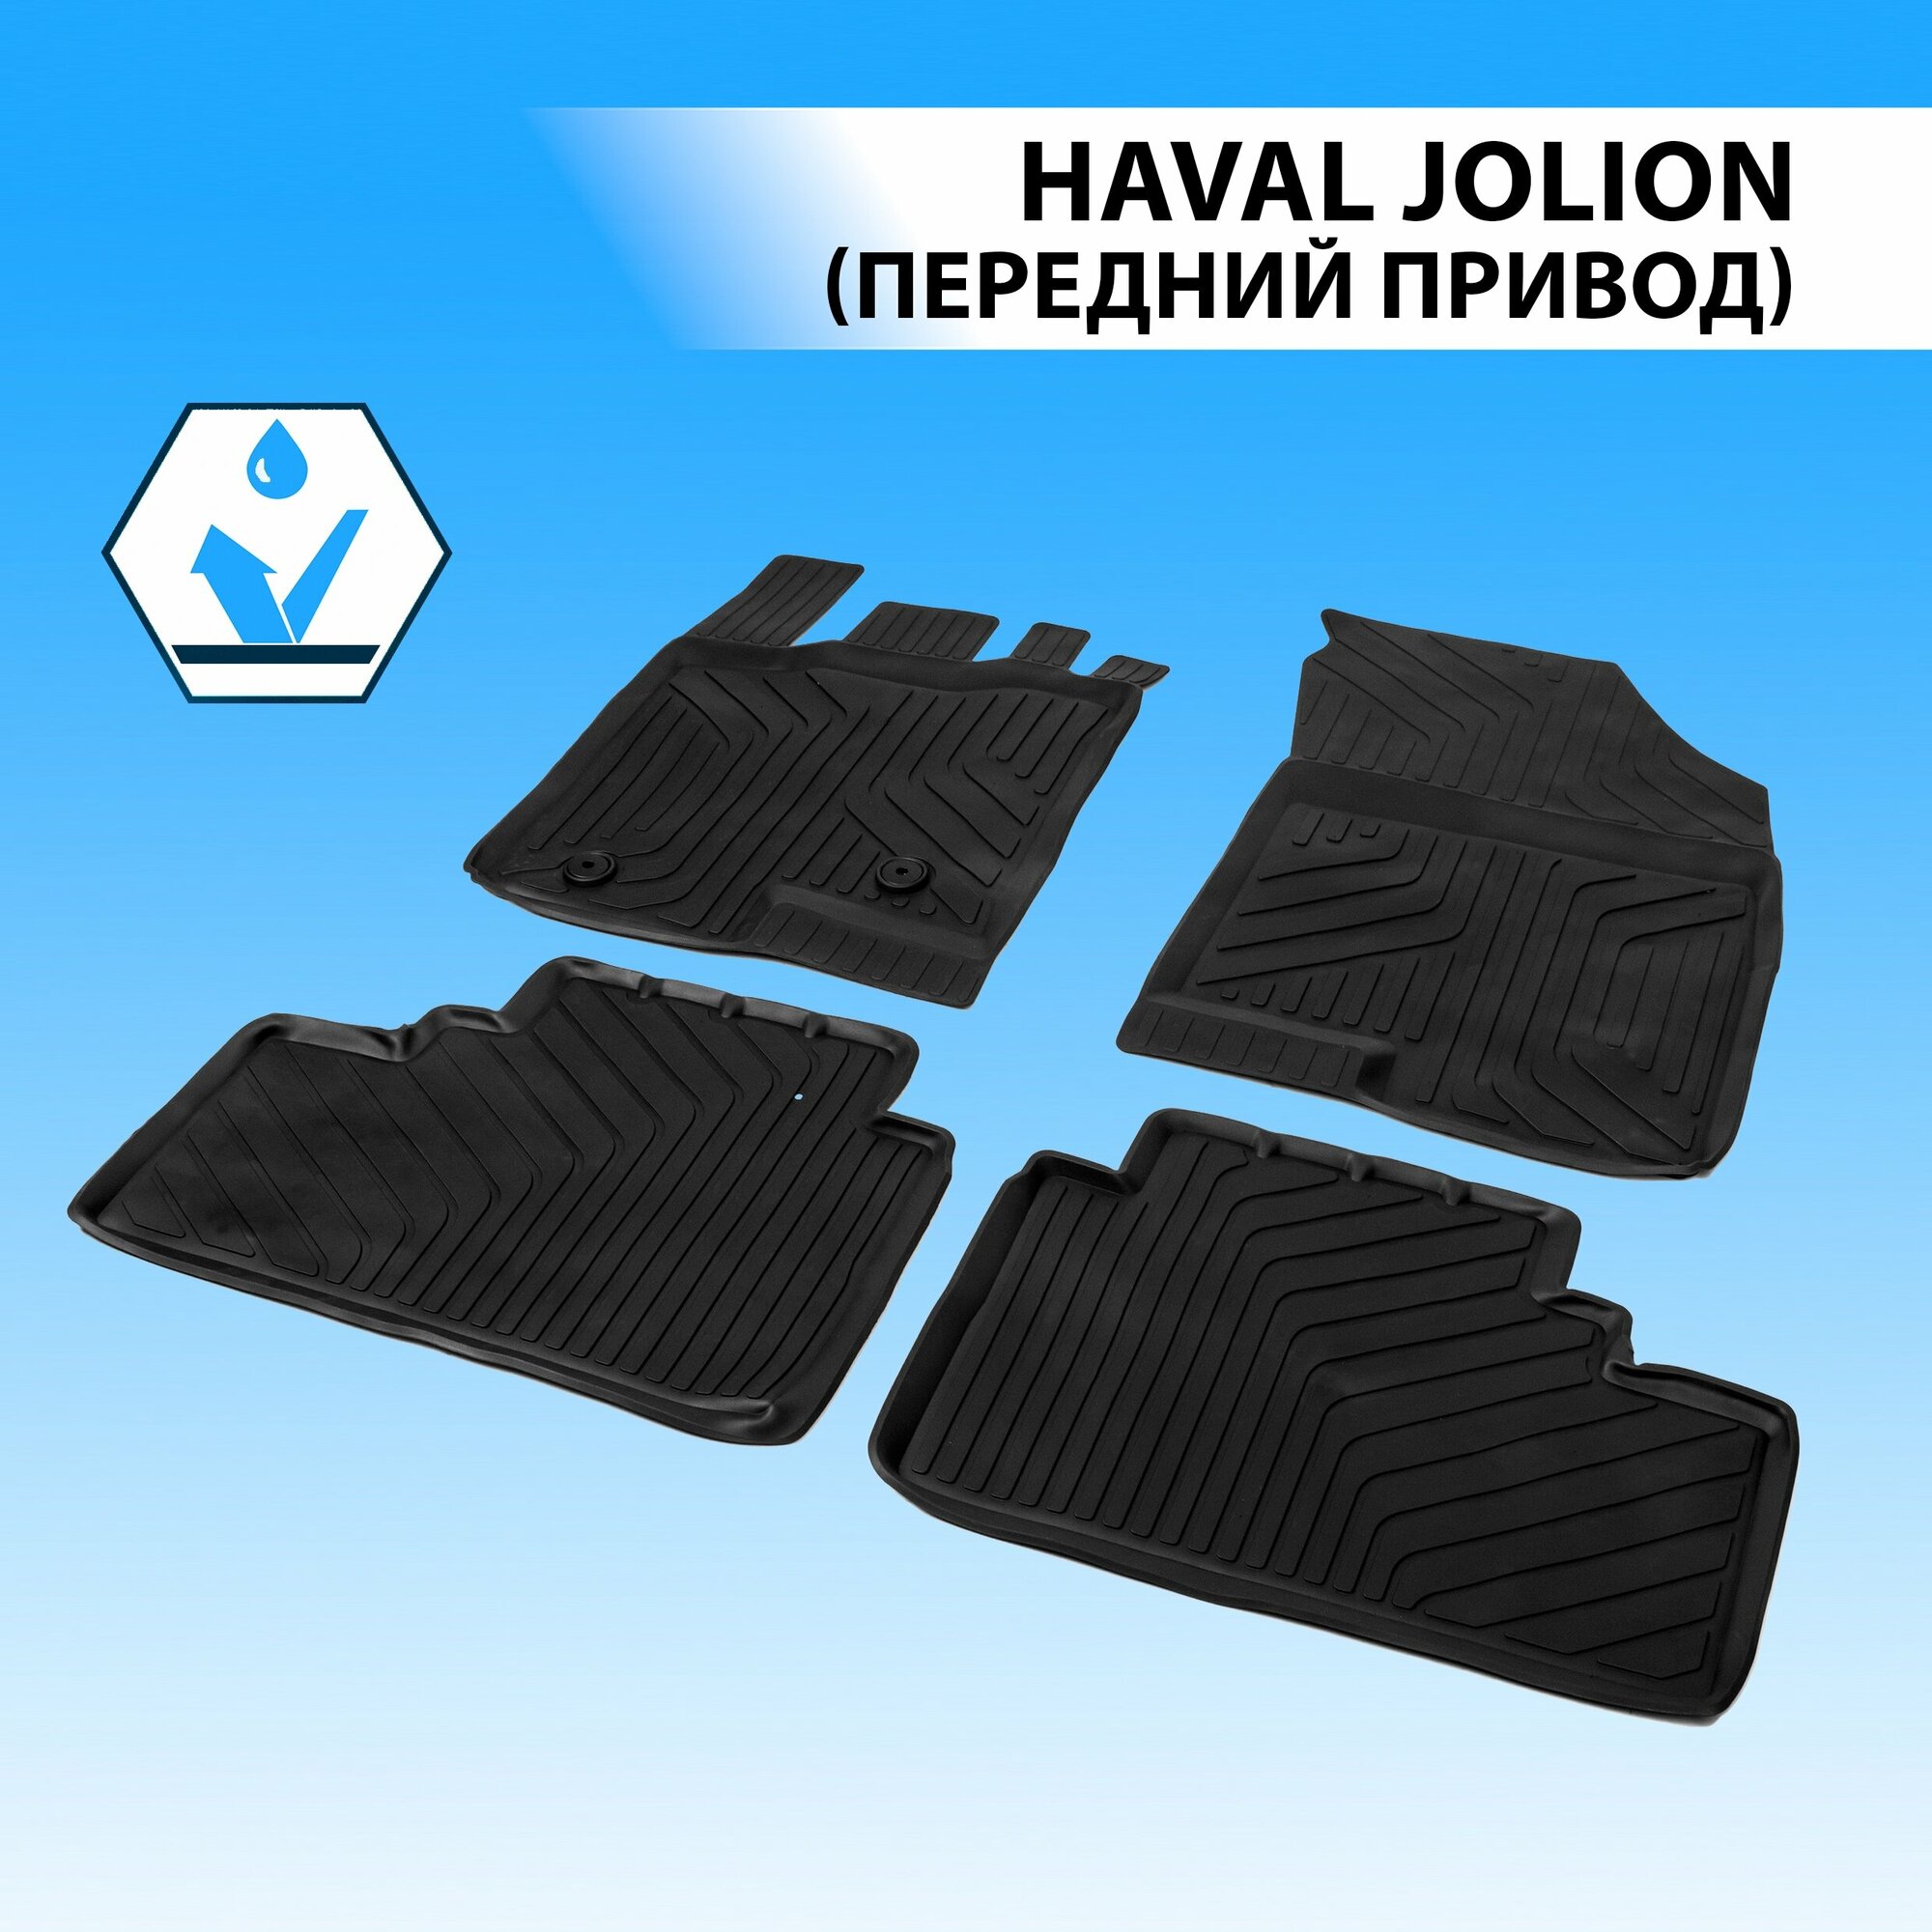 Коврики в салон автомобиля литьевые Rival для Haval Jolion (передний привод) 2021-н. в, литьевой полиуретан, с крепежом, 4 шт, 69404001